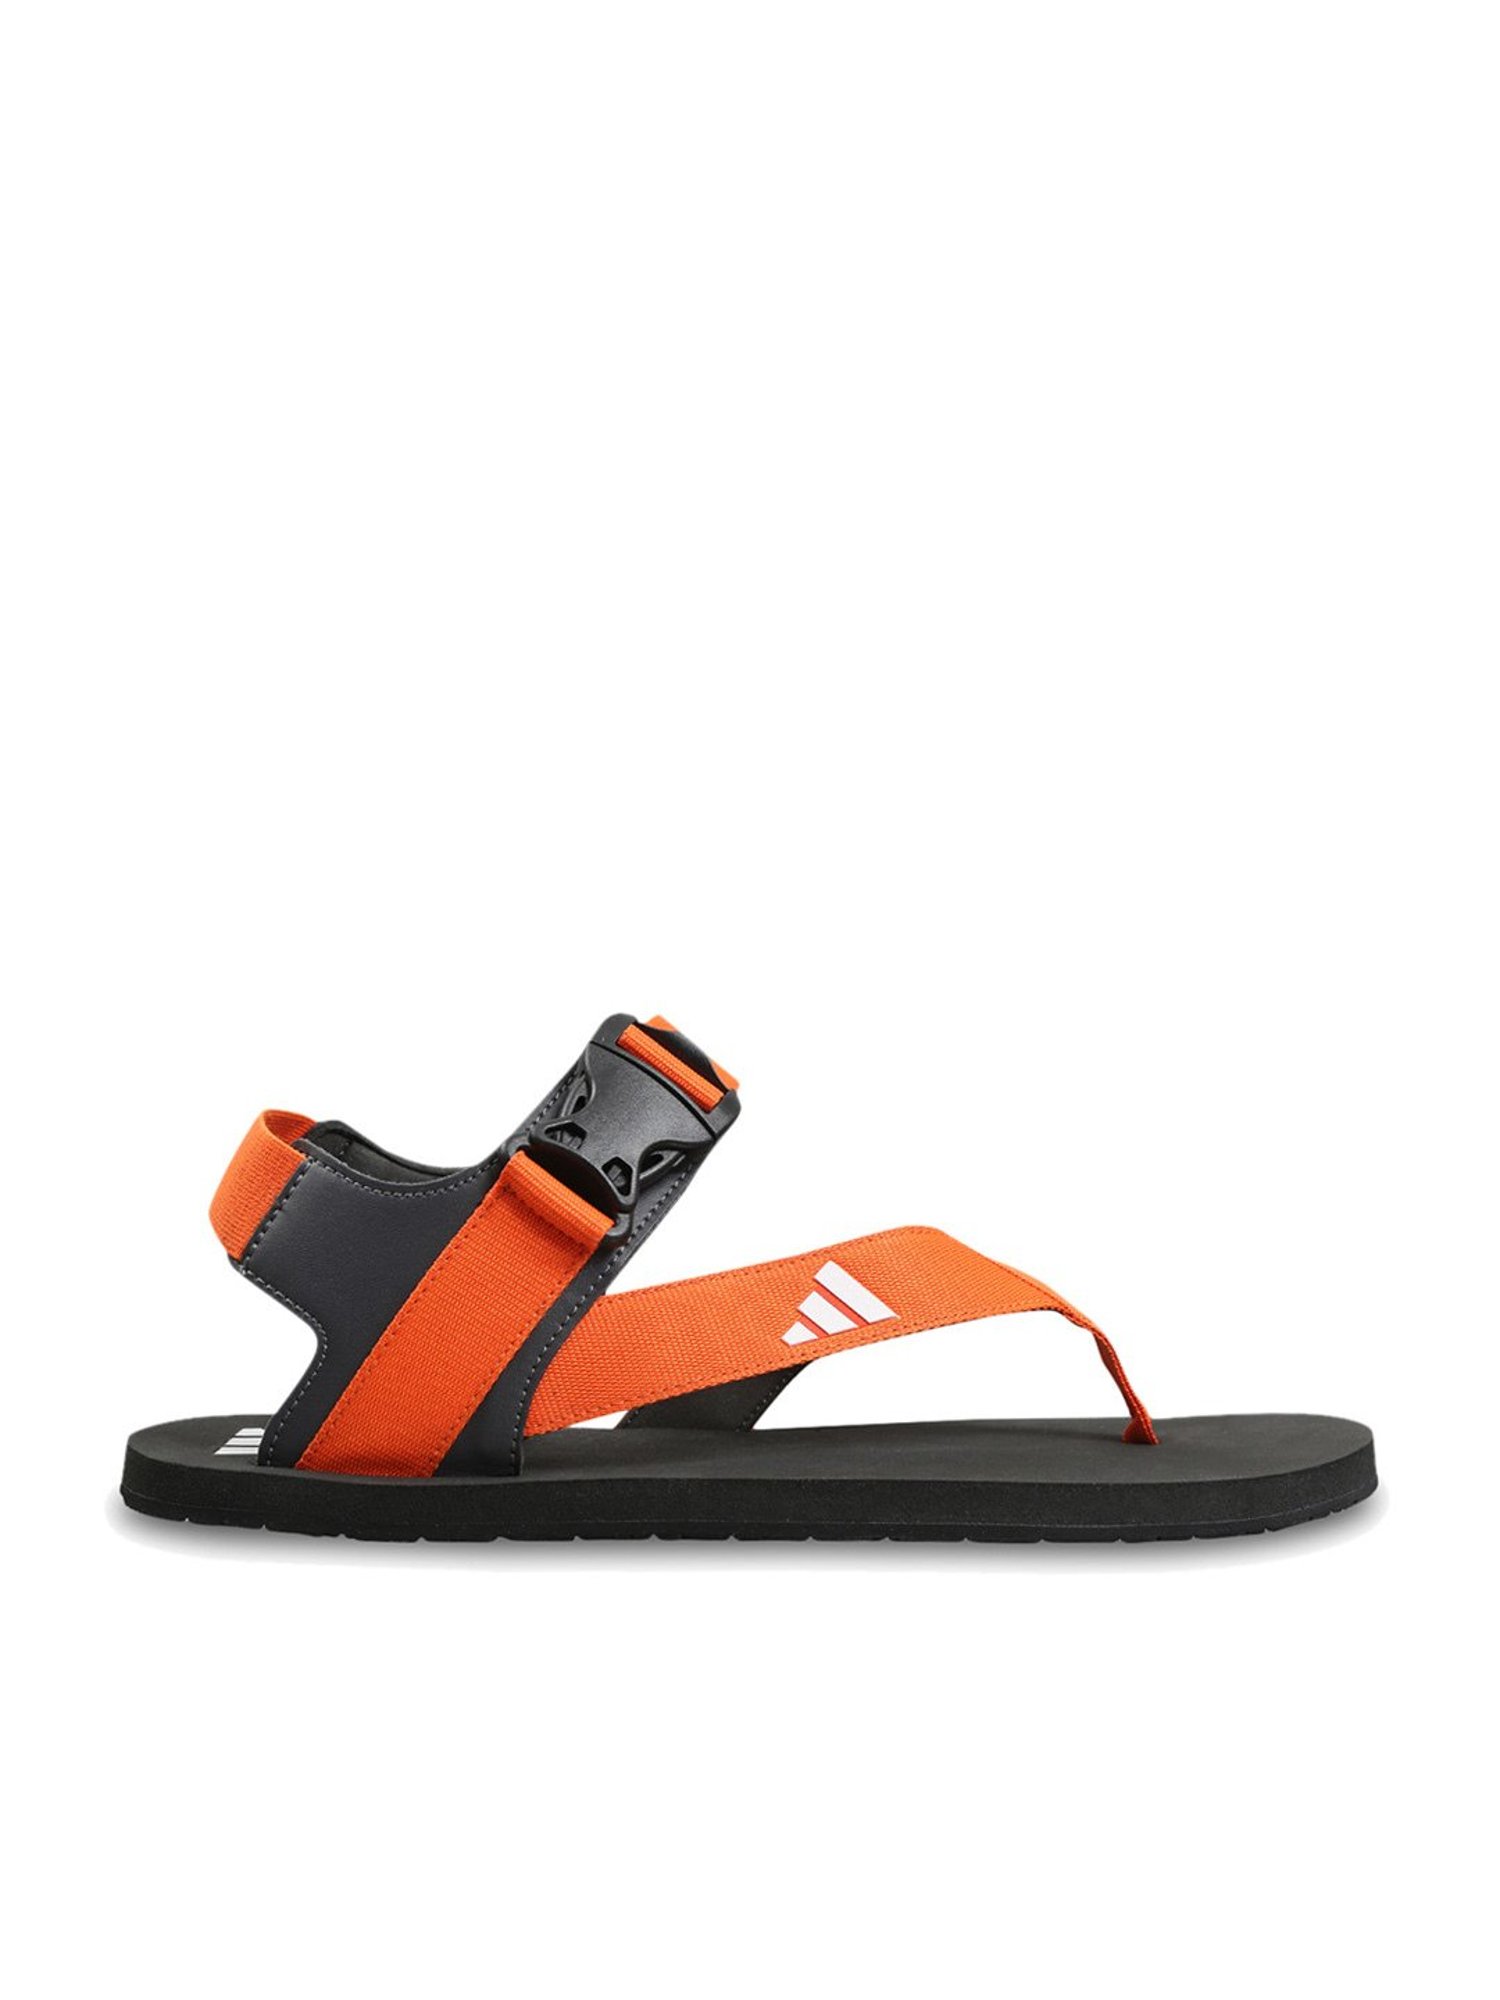 Adidas mens RAMBADLER M CBLACK/STONE/GRESIX/ACTGOL Sport Sandal - 7 UK  (GB2949) : Amazon.in: Fashion